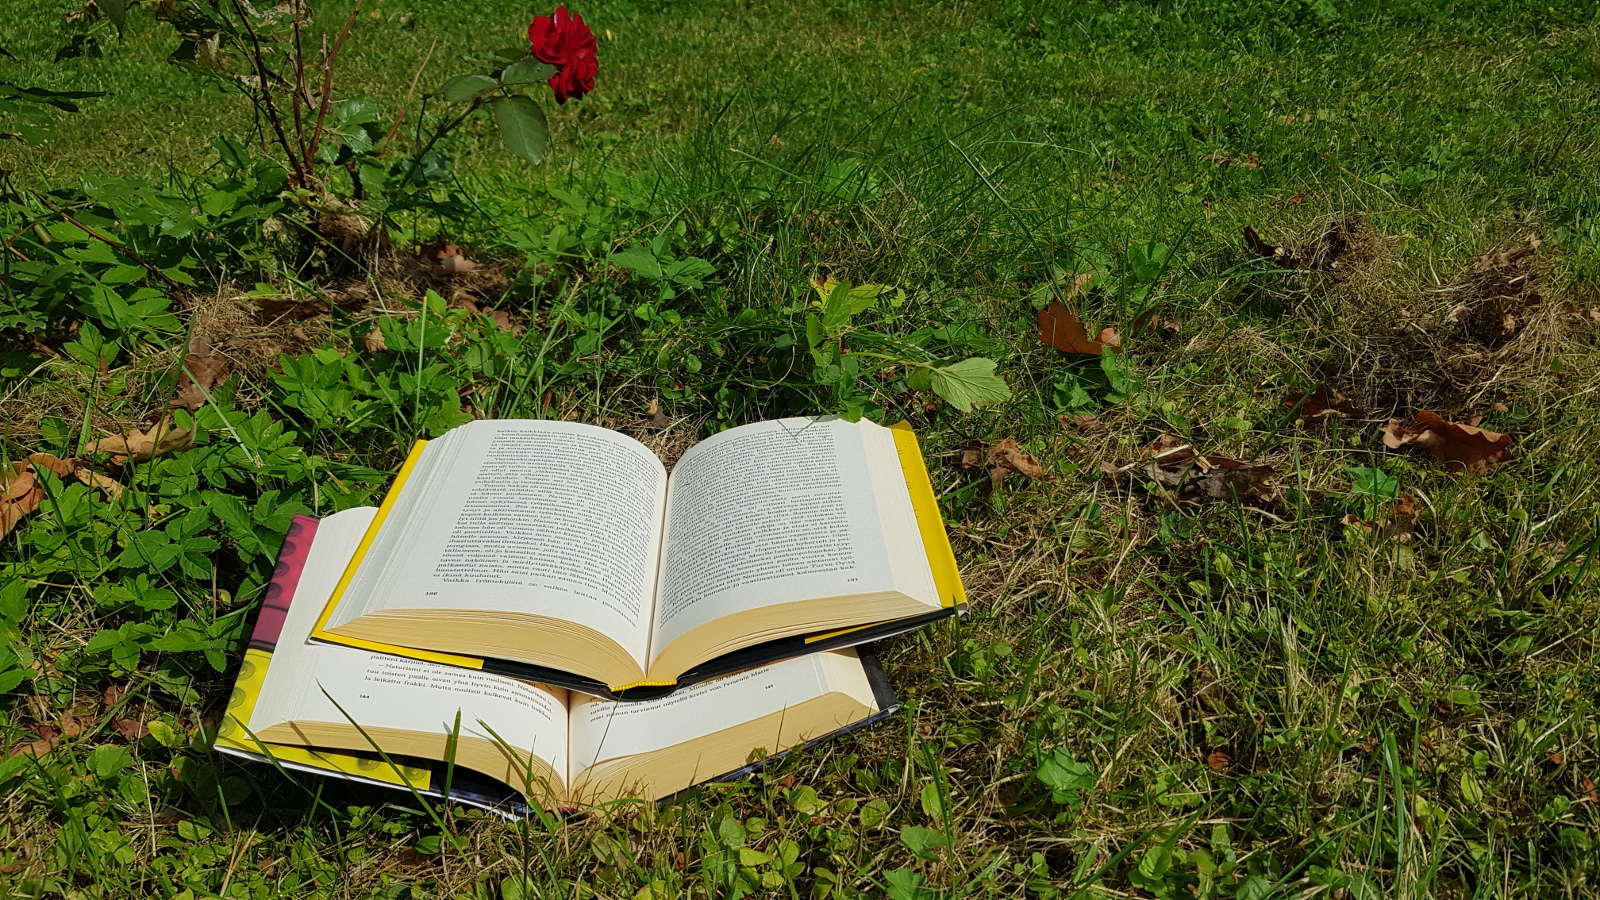 Kuvassa on kaksi kirjaa avoinna nurmikolla ja kuvan ylläosassa on punainen ruusu.